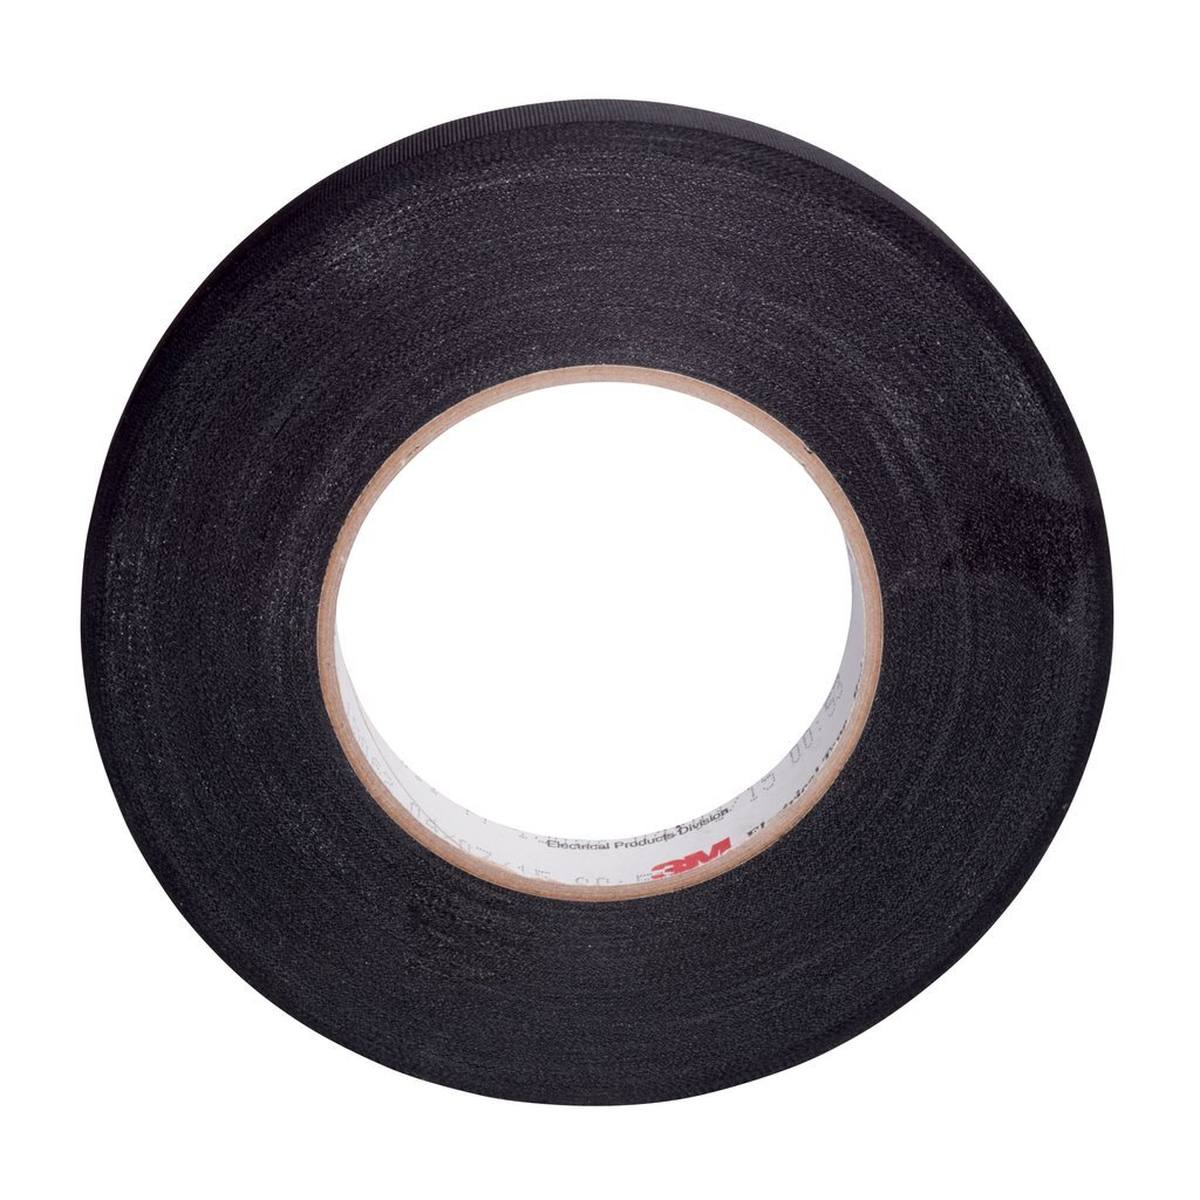 3M ET 11 Acetate fabric tape, black, 603 mm x 66 m, 0.18 mm